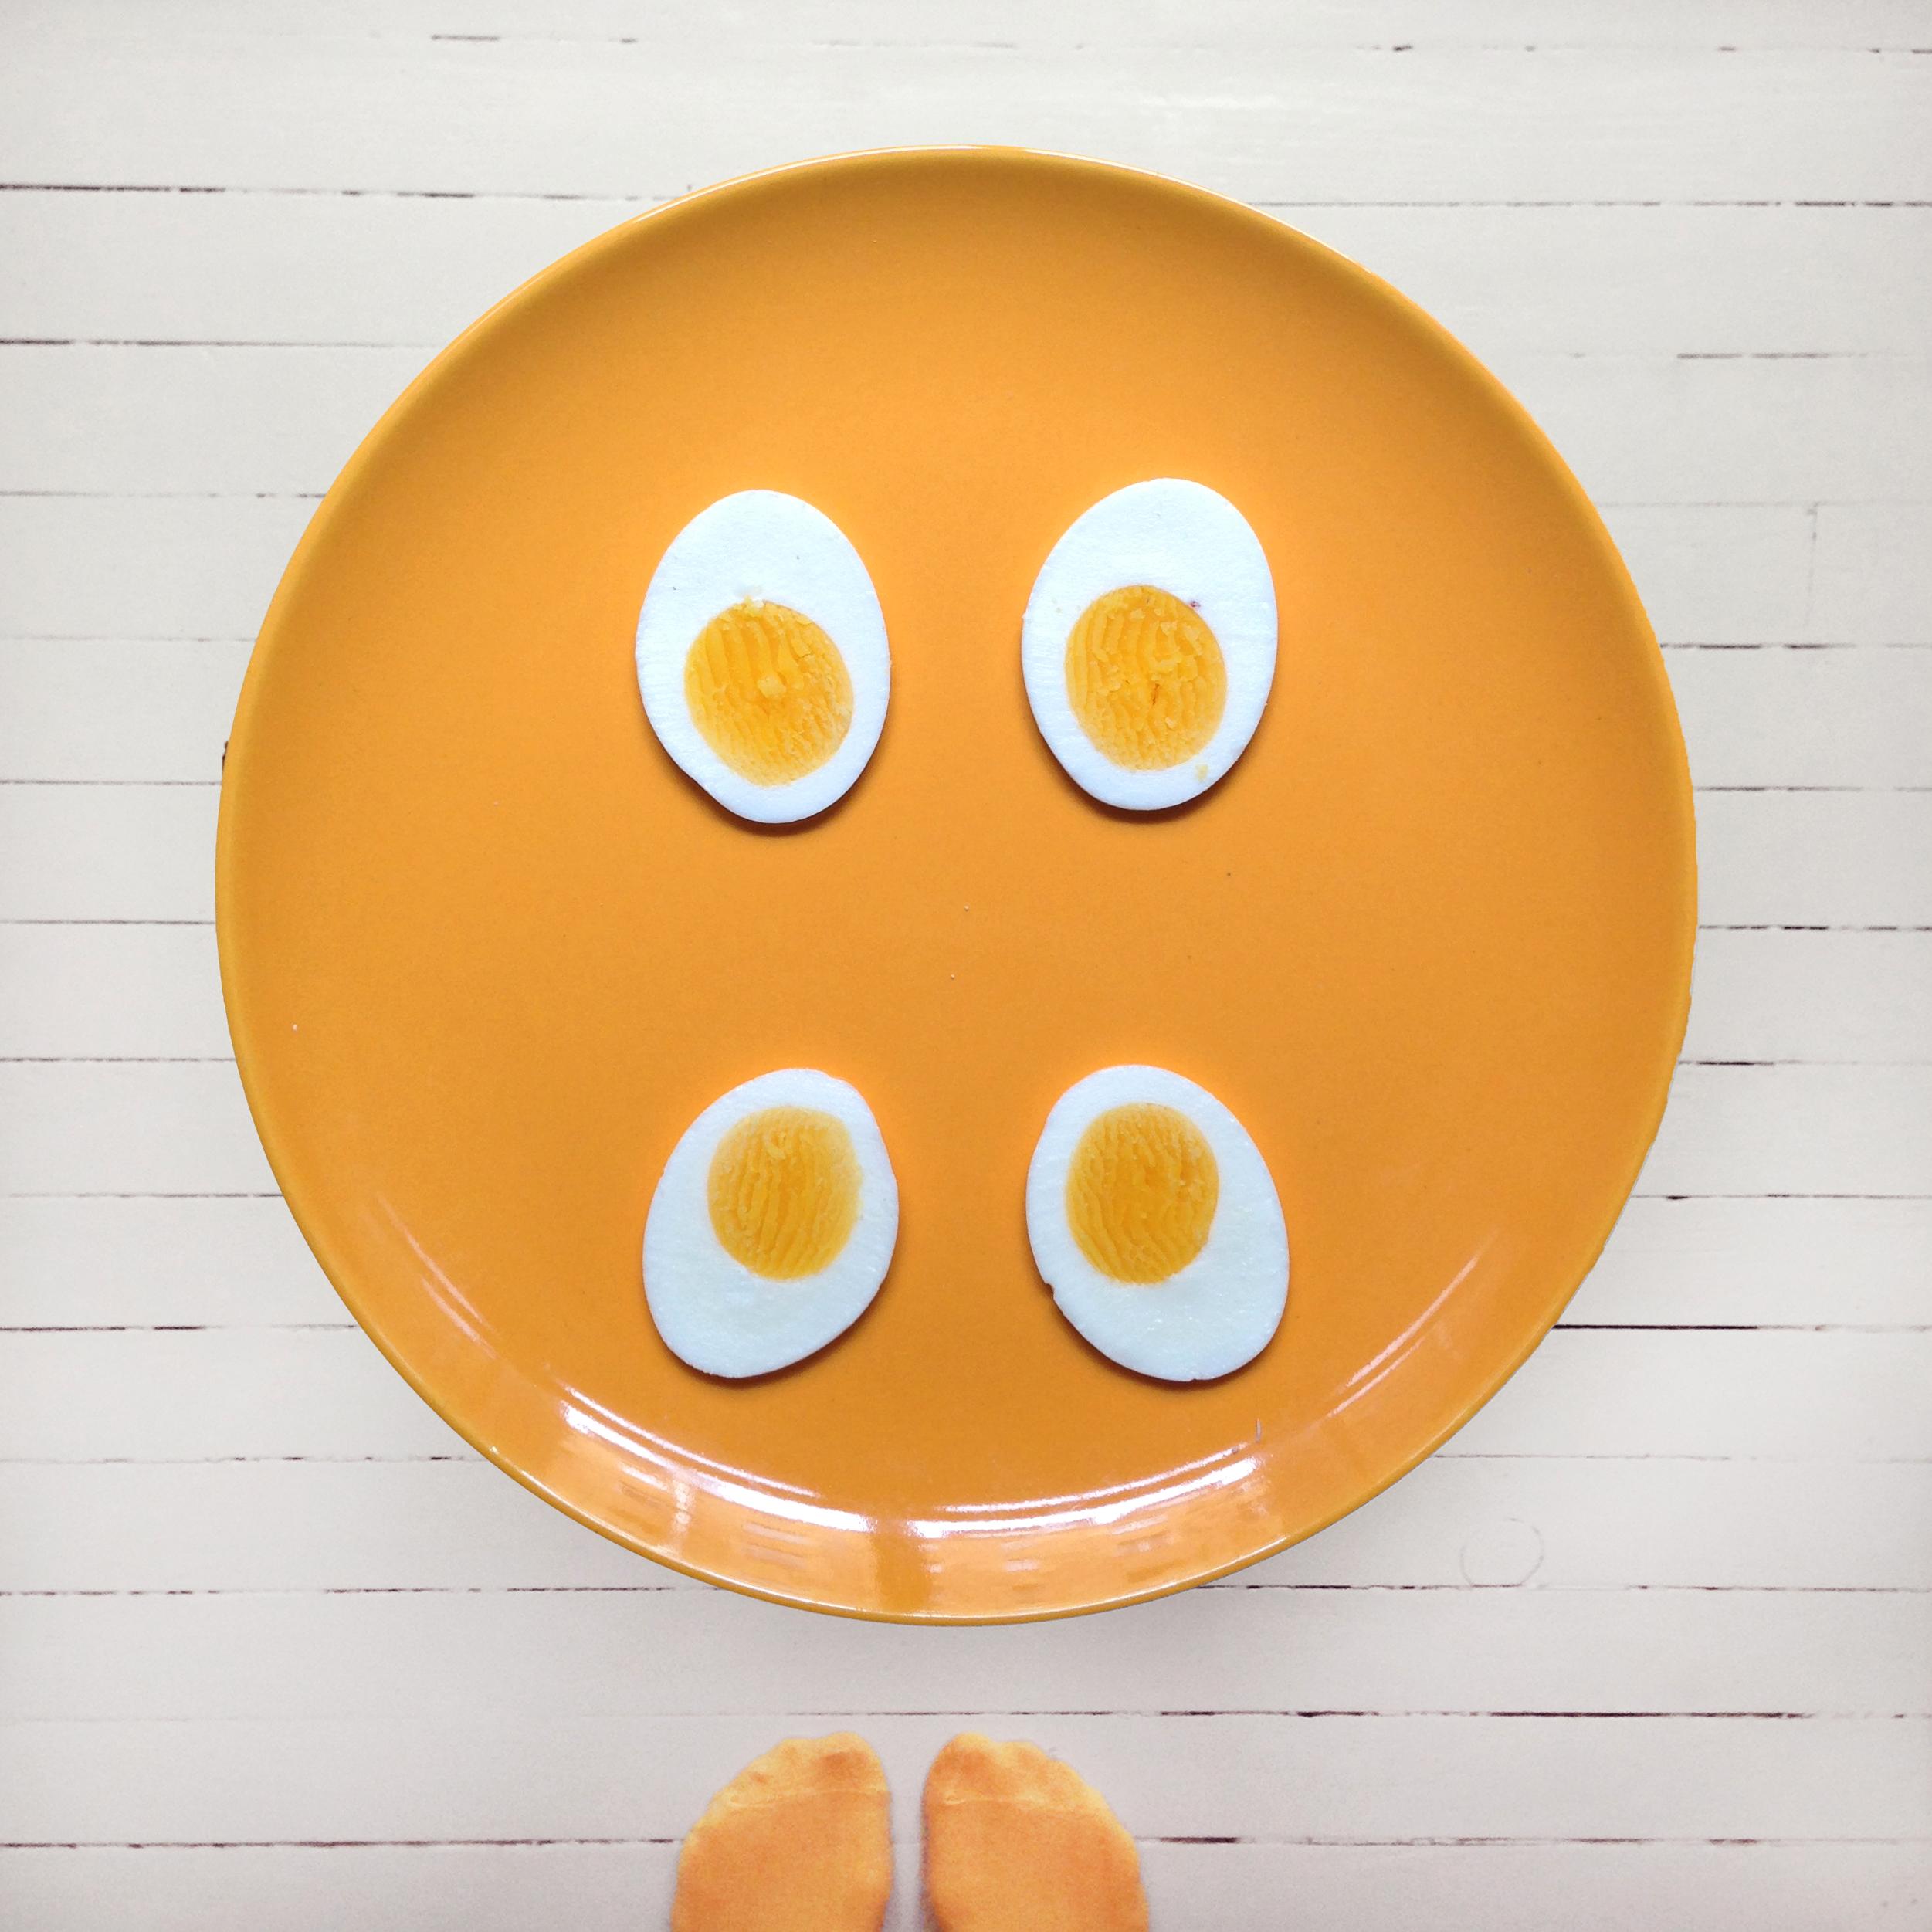 Legg egget på langs i en eggedeler så du får fine avlange skiver.